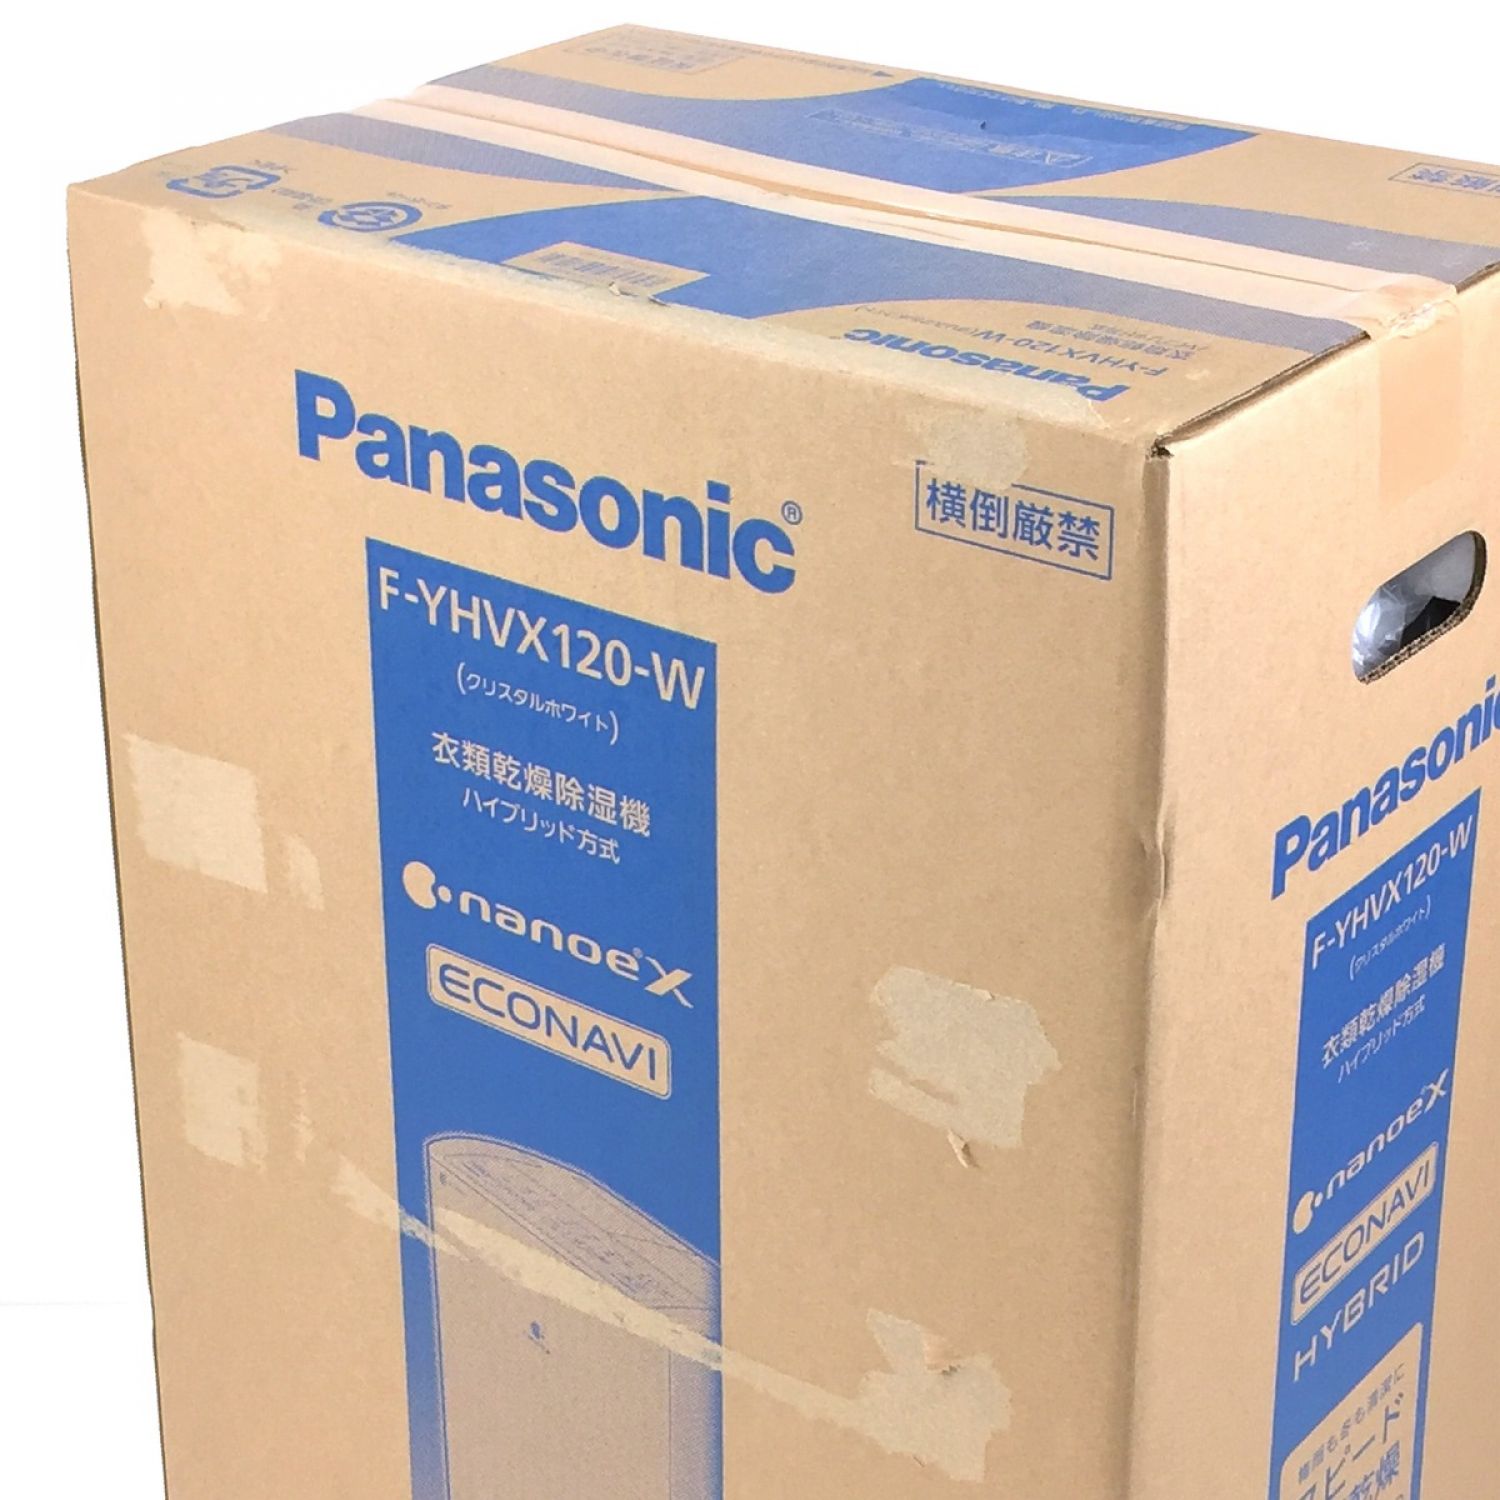 中古】 Panasonic パナソニック 衣類乾燥除湿機 HYBRID&ECONAVI&nanoeX